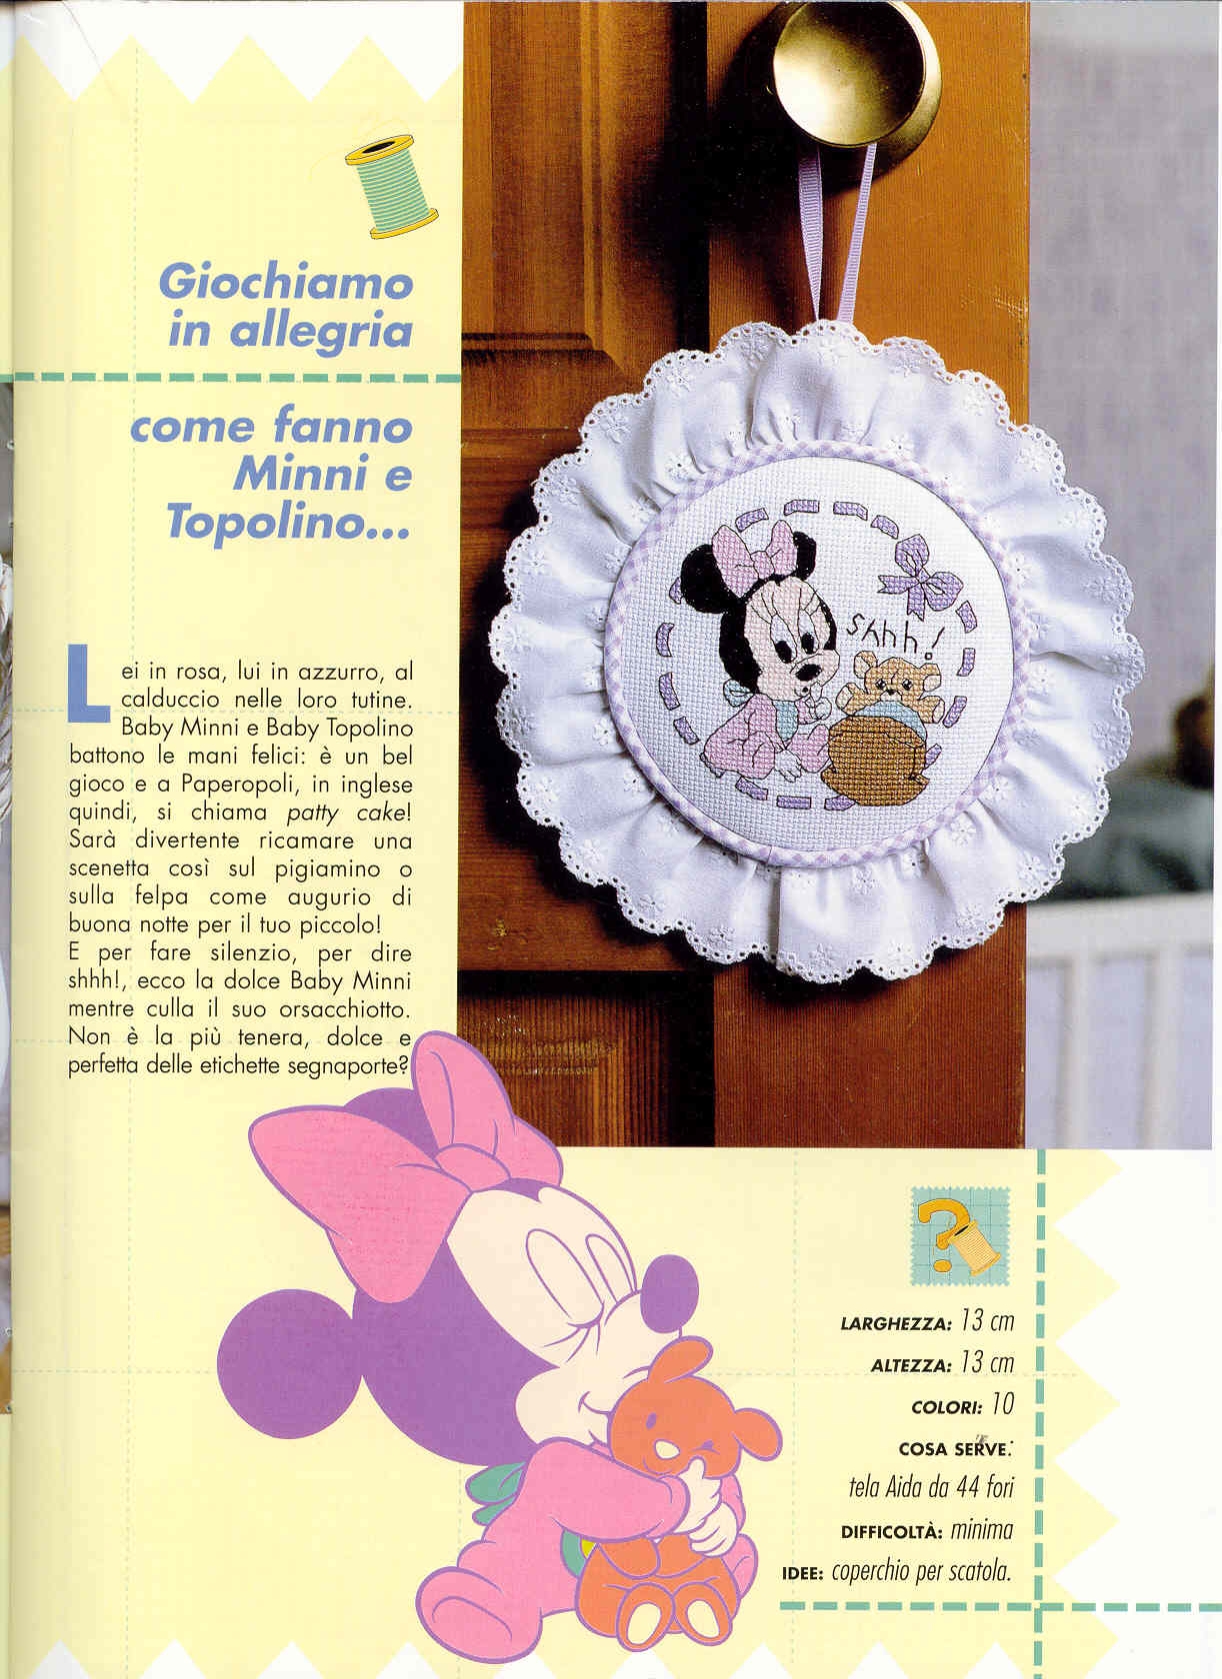 Birth bow with Disney Minnie and a teddy bear (1)